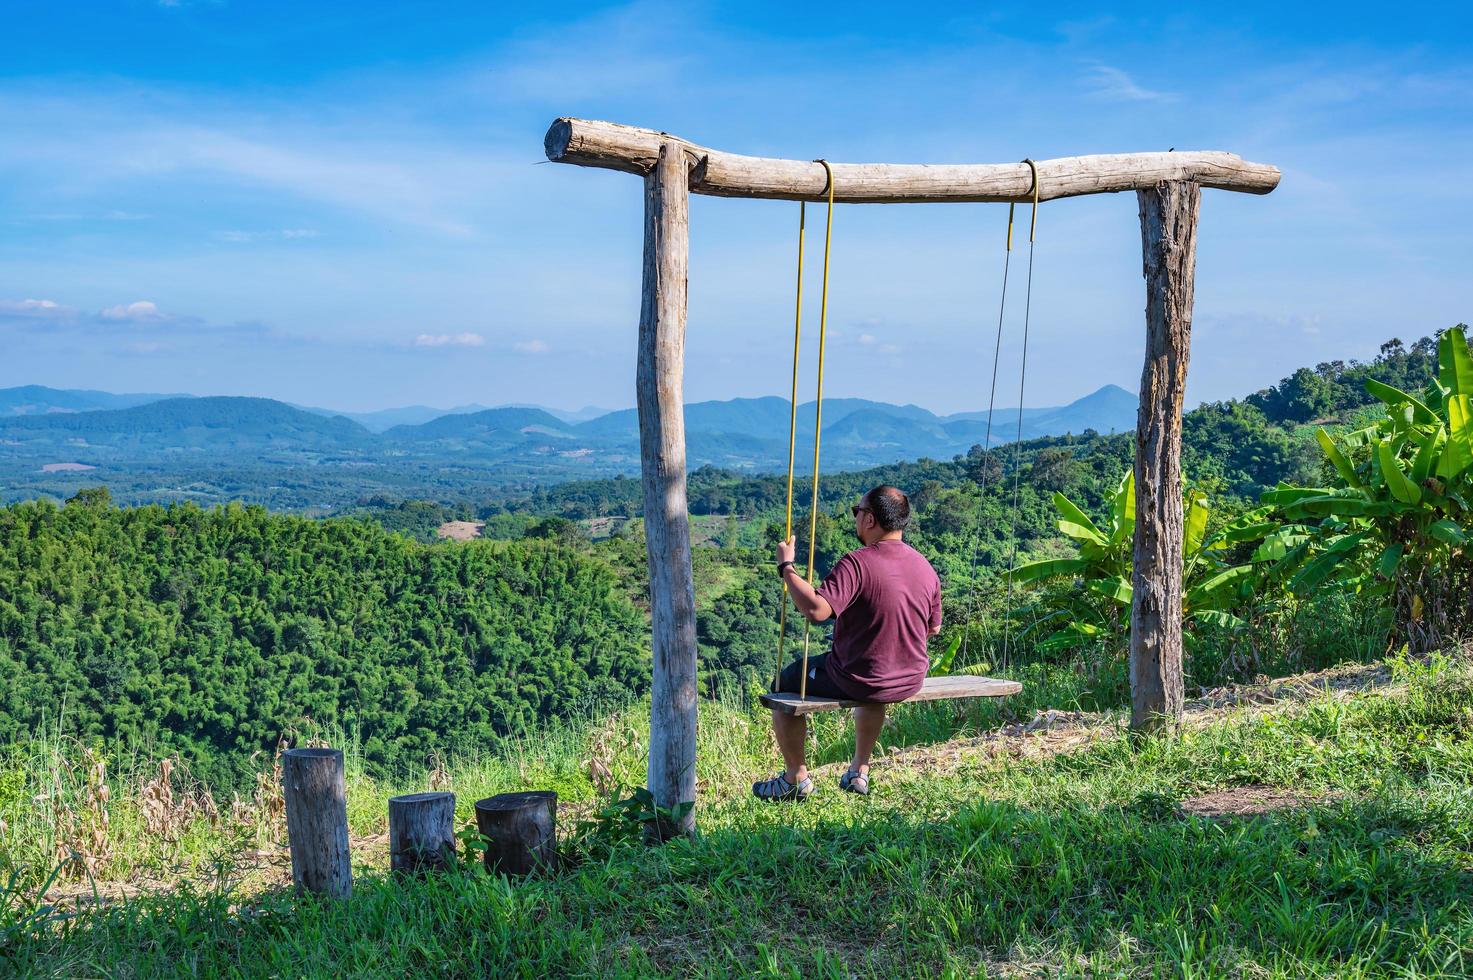 asiatico Grasso tipo seduta su di legno swing con bellissimo paesaggio Visualizza su phu lamduan a loei thailandia.phu lamduan è un' nuovo turista attrazione e punto di vista di Mekong fiume fra Tailandia e loas. foto